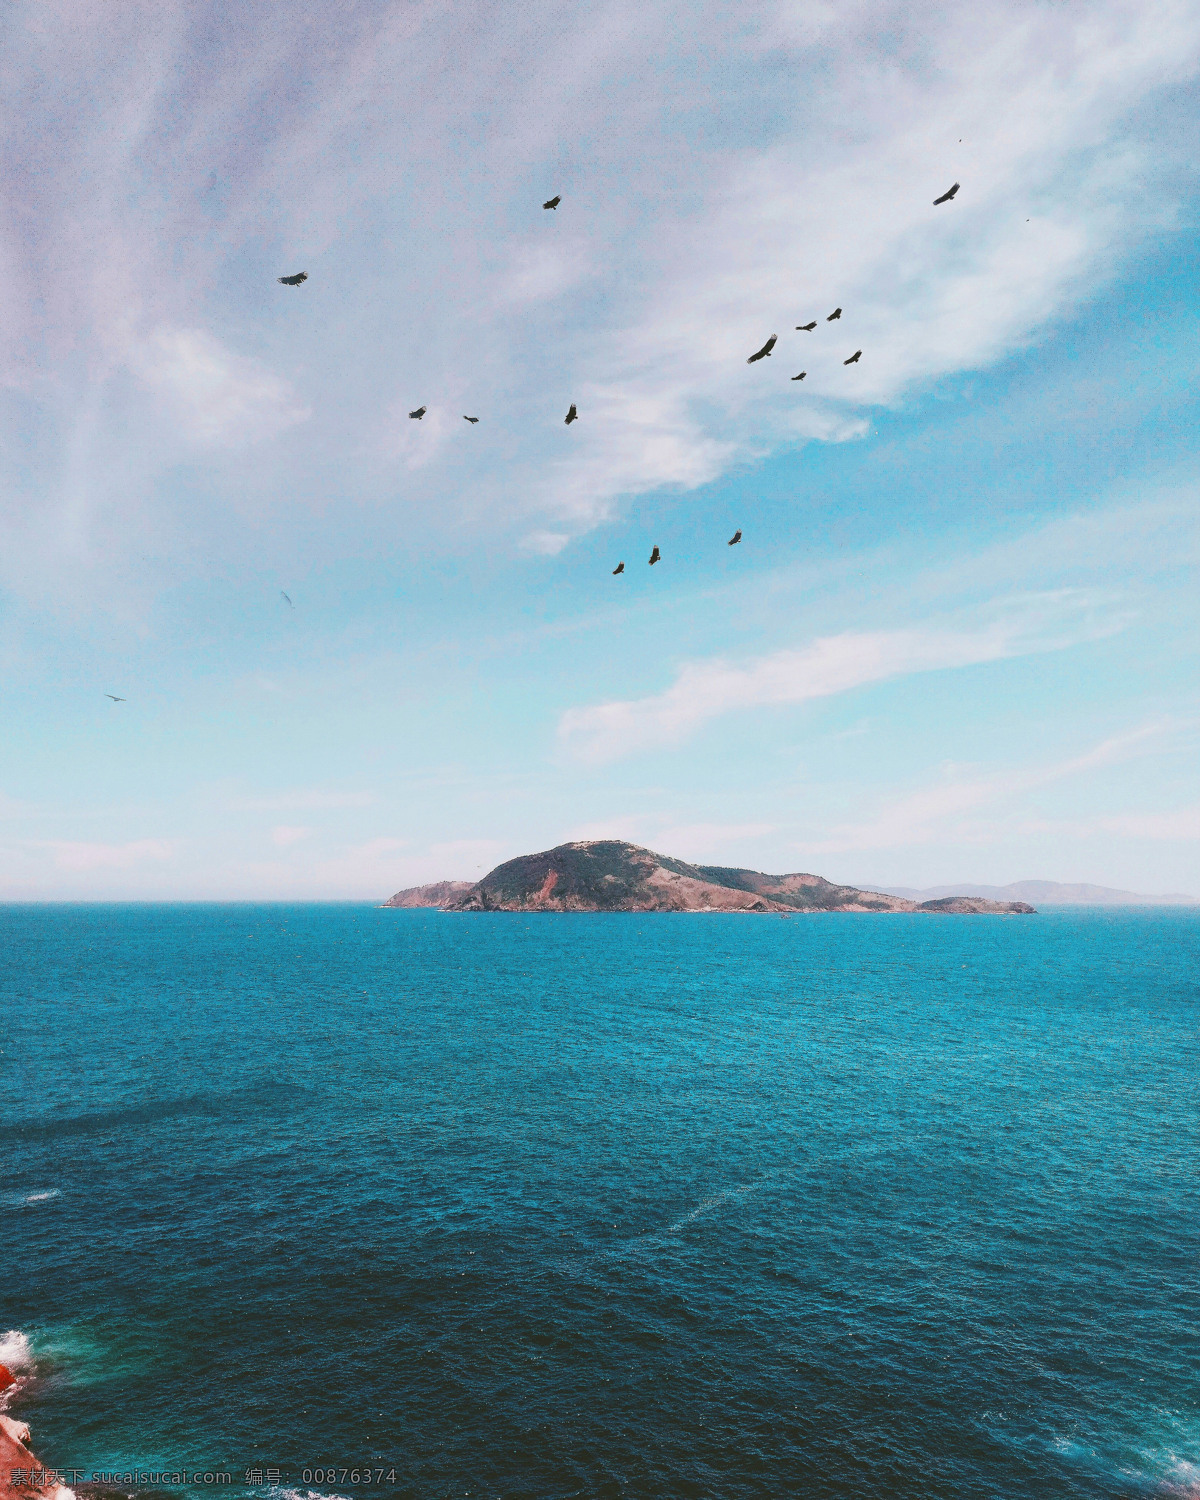 大海看天小岛 大海 看天 蓝天 小岛 蓝色的 绿色 蓝绿色 背景 风景 自然景观 山水风景